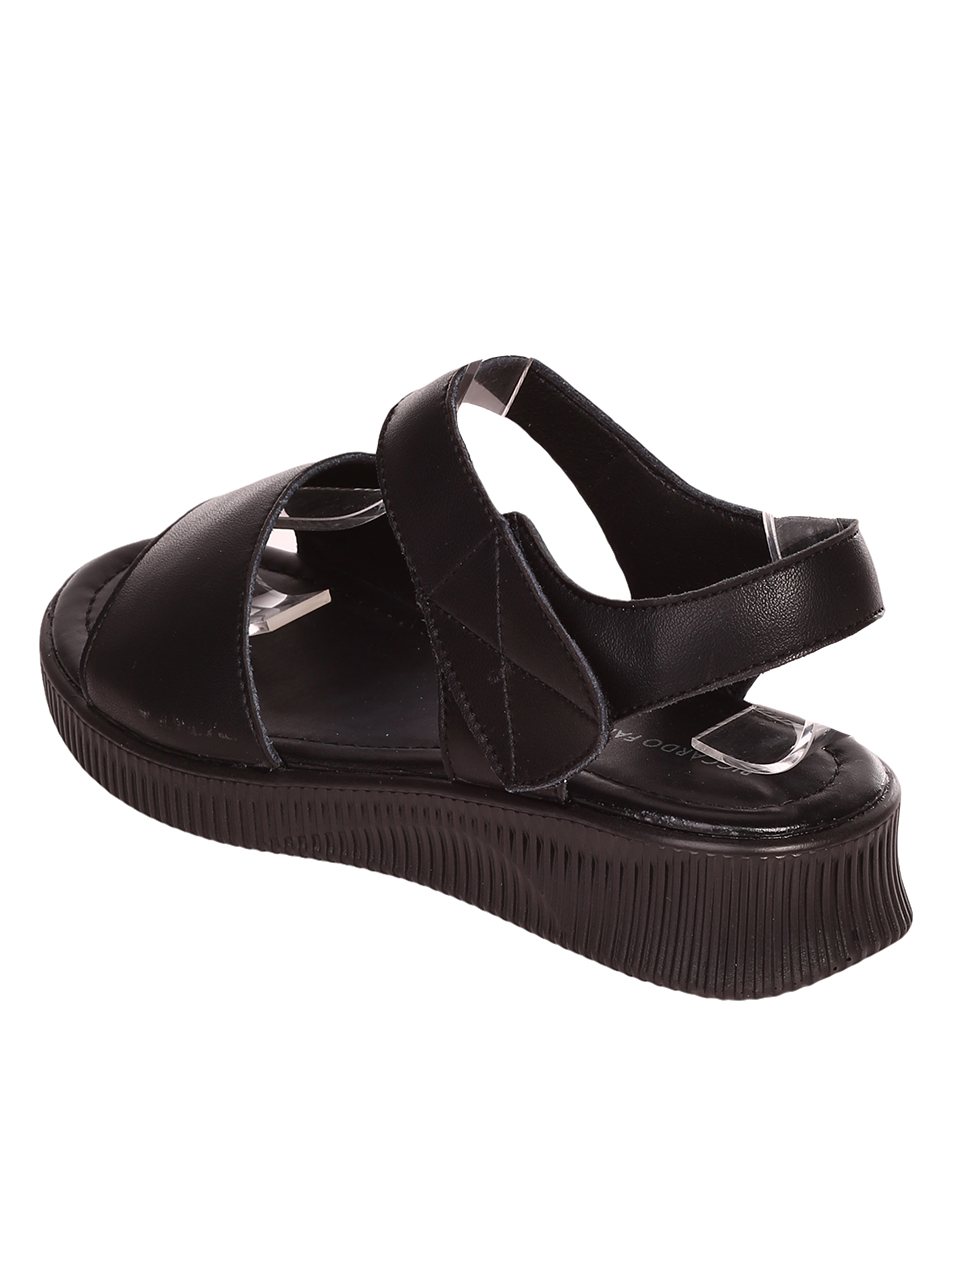 Ежедневни дамски сандали от естествена кожа в черно 4AF-23168 black